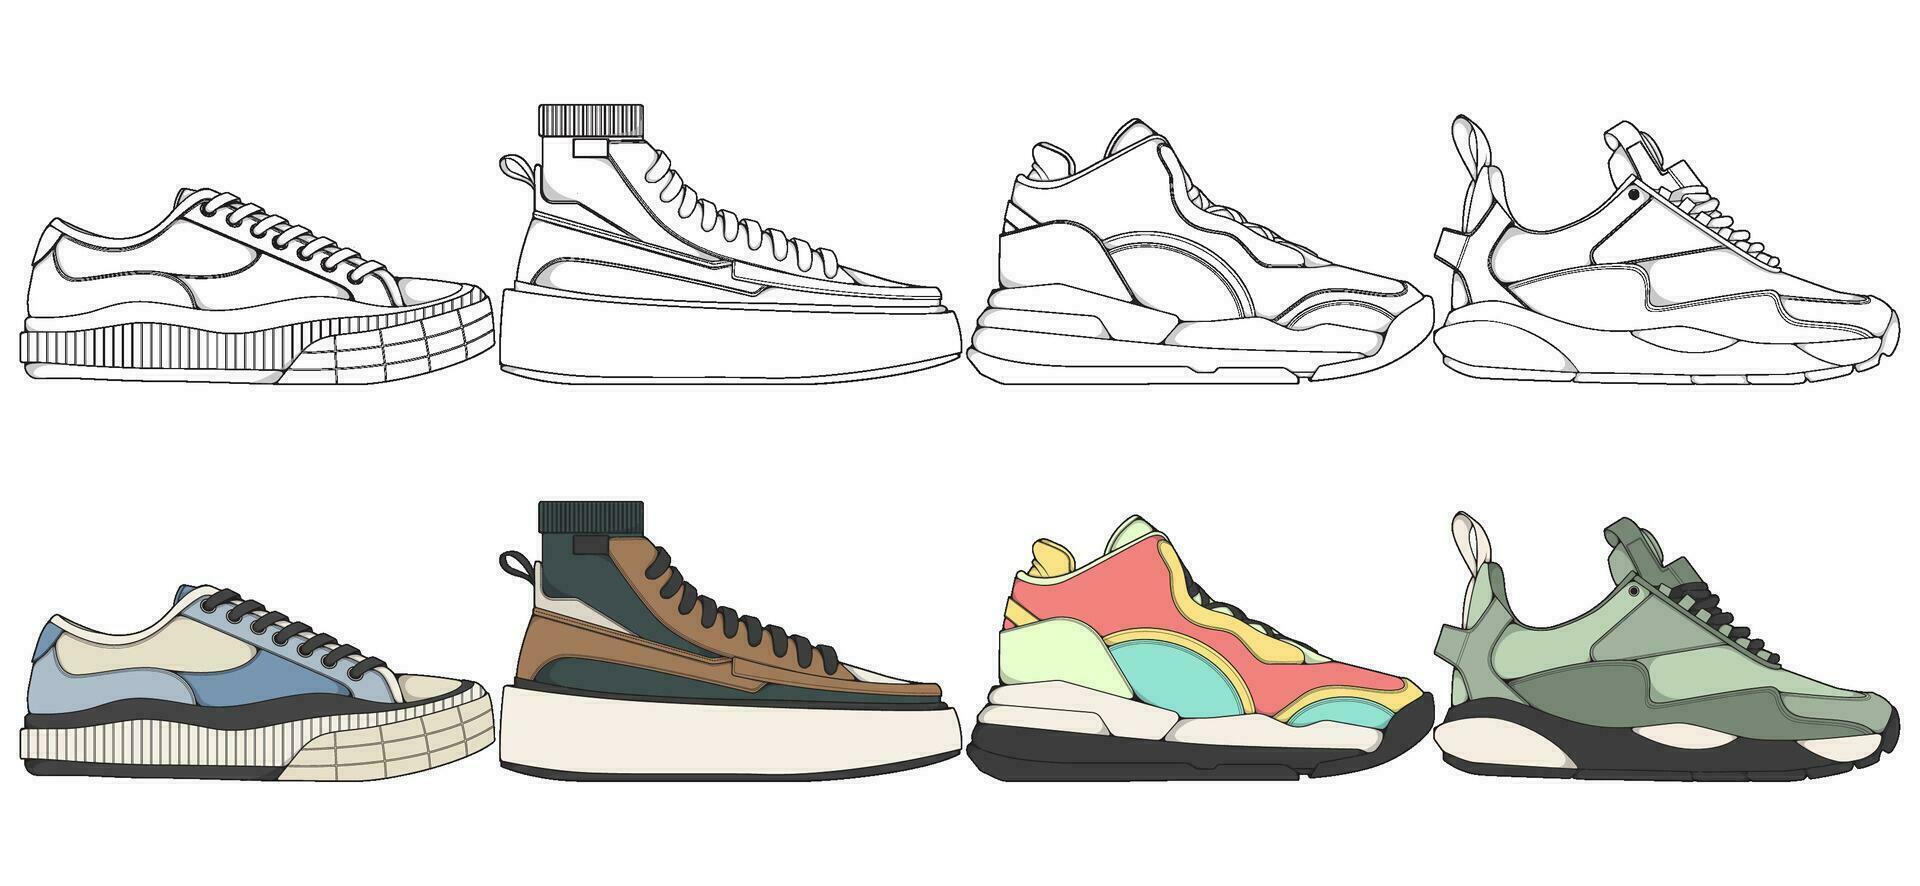 reeks van schoenen sneaker tekening vector, sportschoenen getrokken in een schetsen stijl, bundelen sportschoenen trainers sjabloon, vector illustratie.